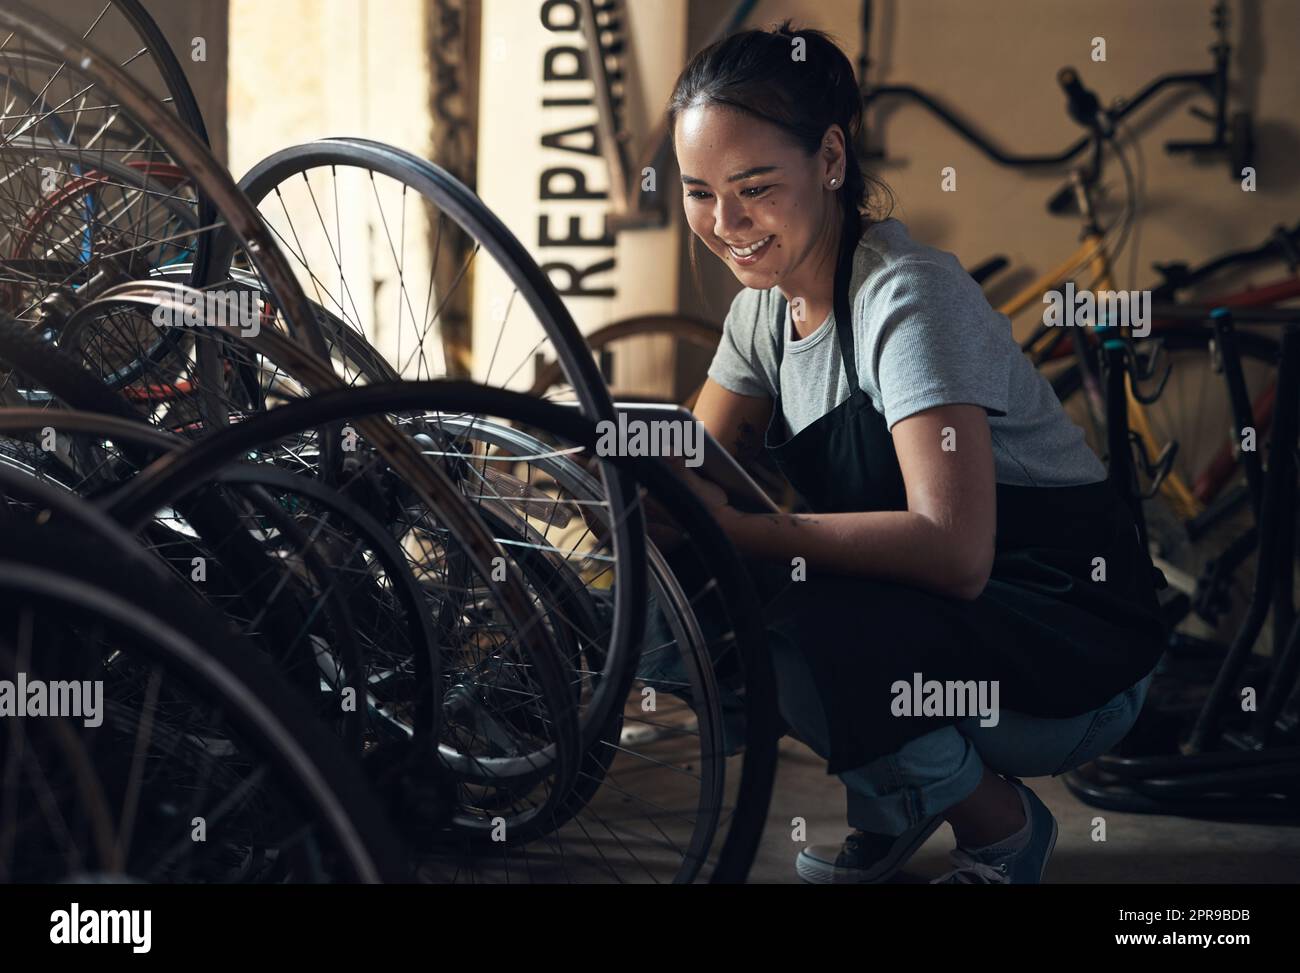 Le maquillage ne m'a jamais ravie. Une jeune femme heureuse qui fixe un vélo dans un atelier de réparation de vélos. Banque D'Images